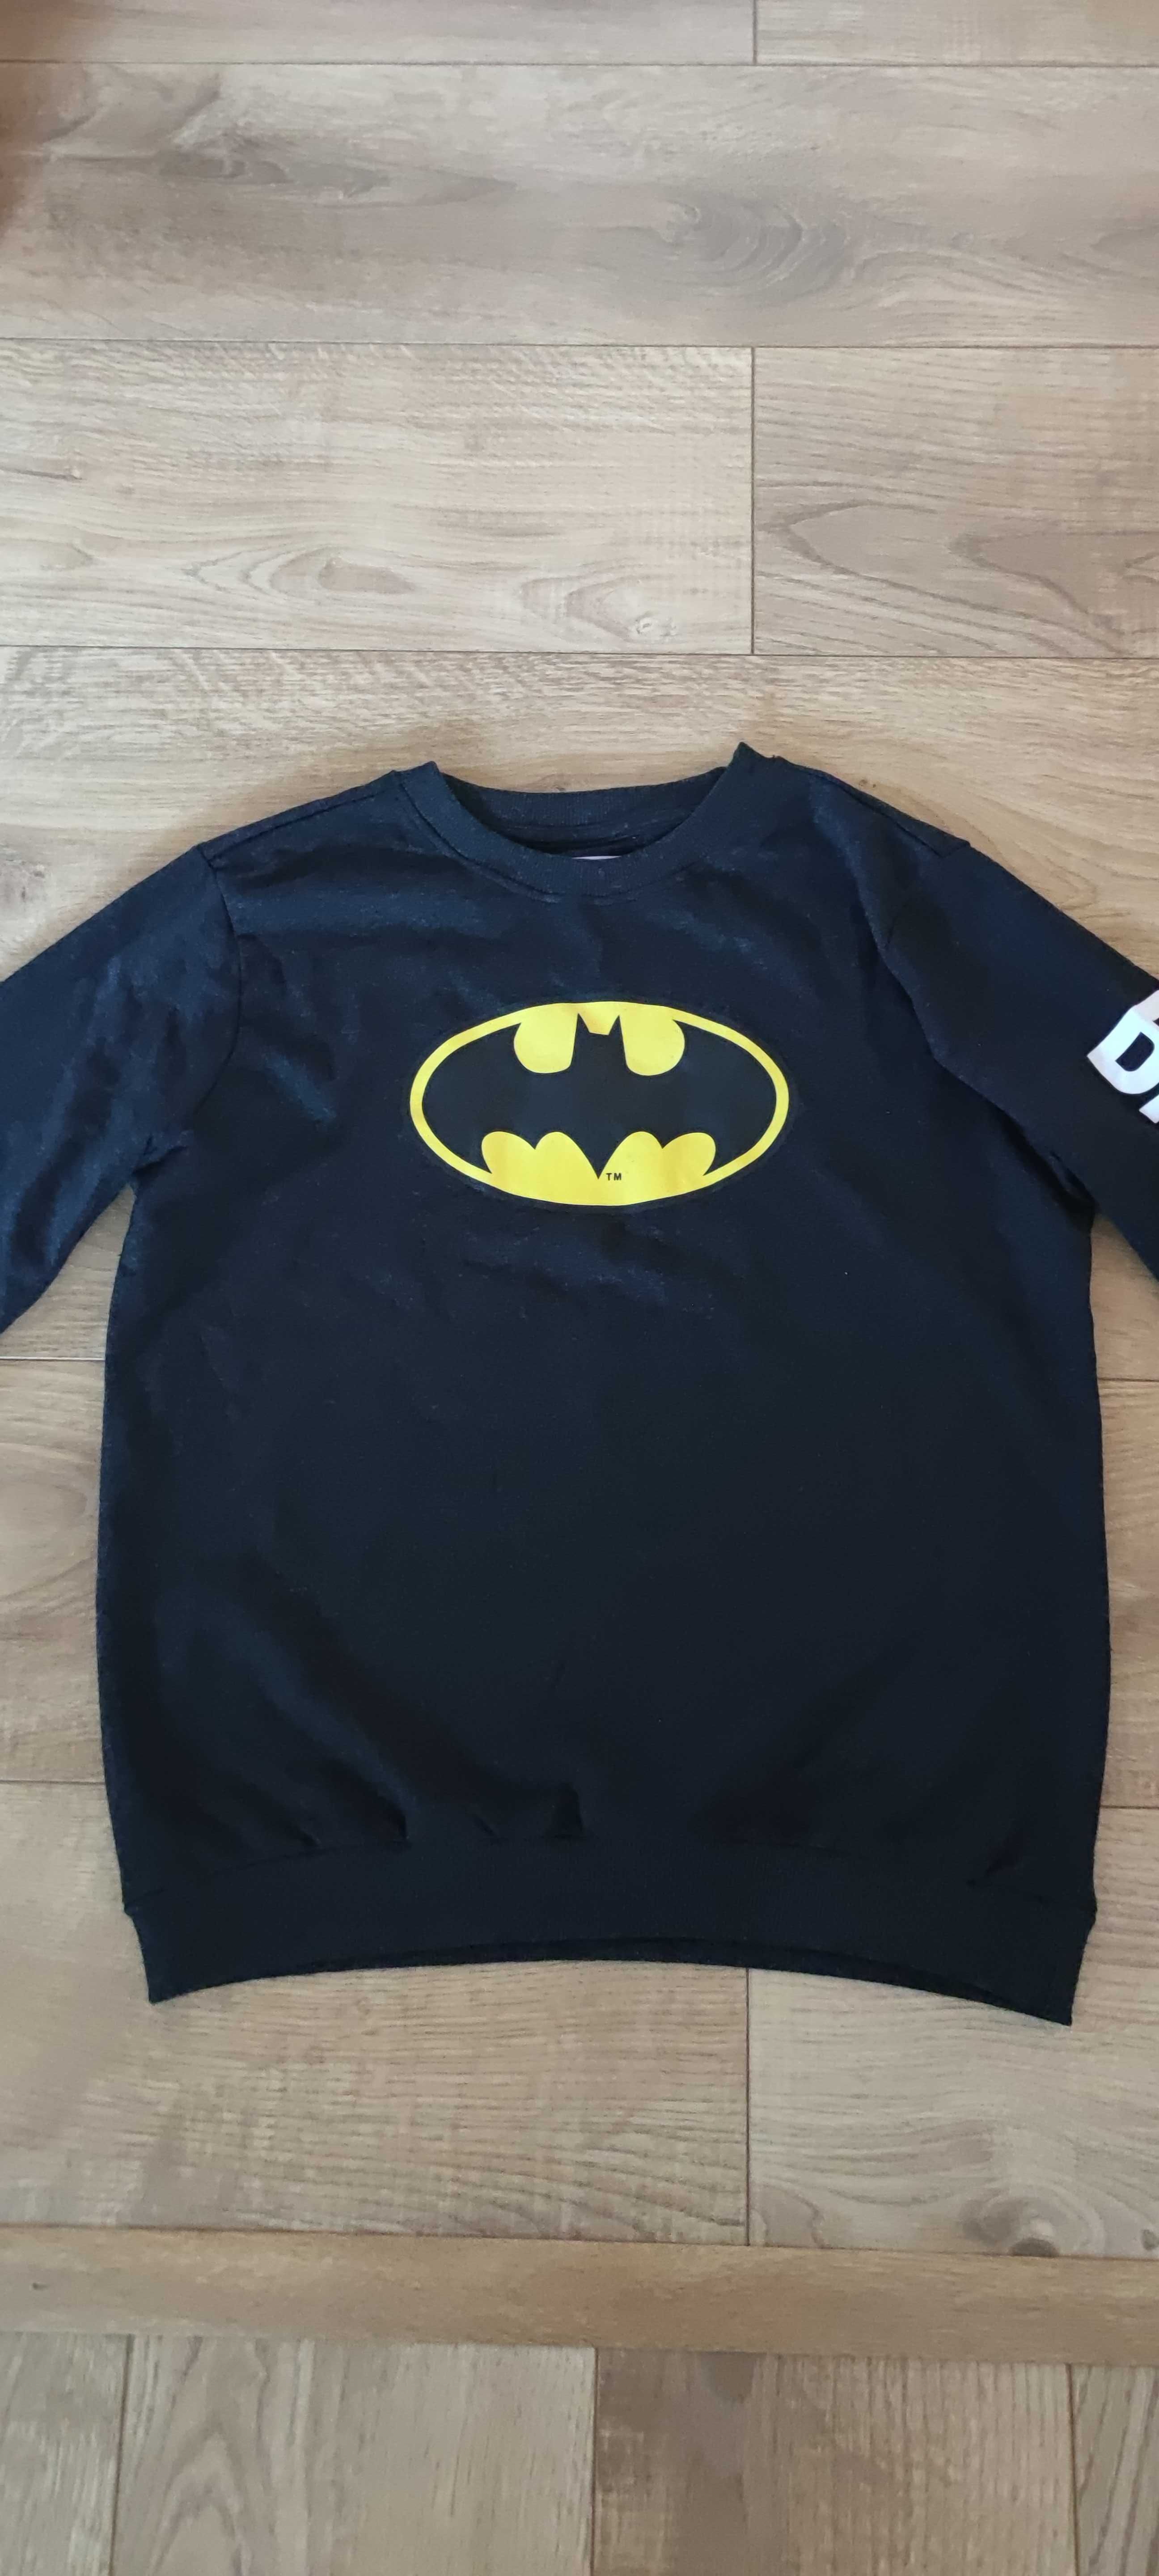 Jak nowa Batman 164 bluza dresowa dla chłopca